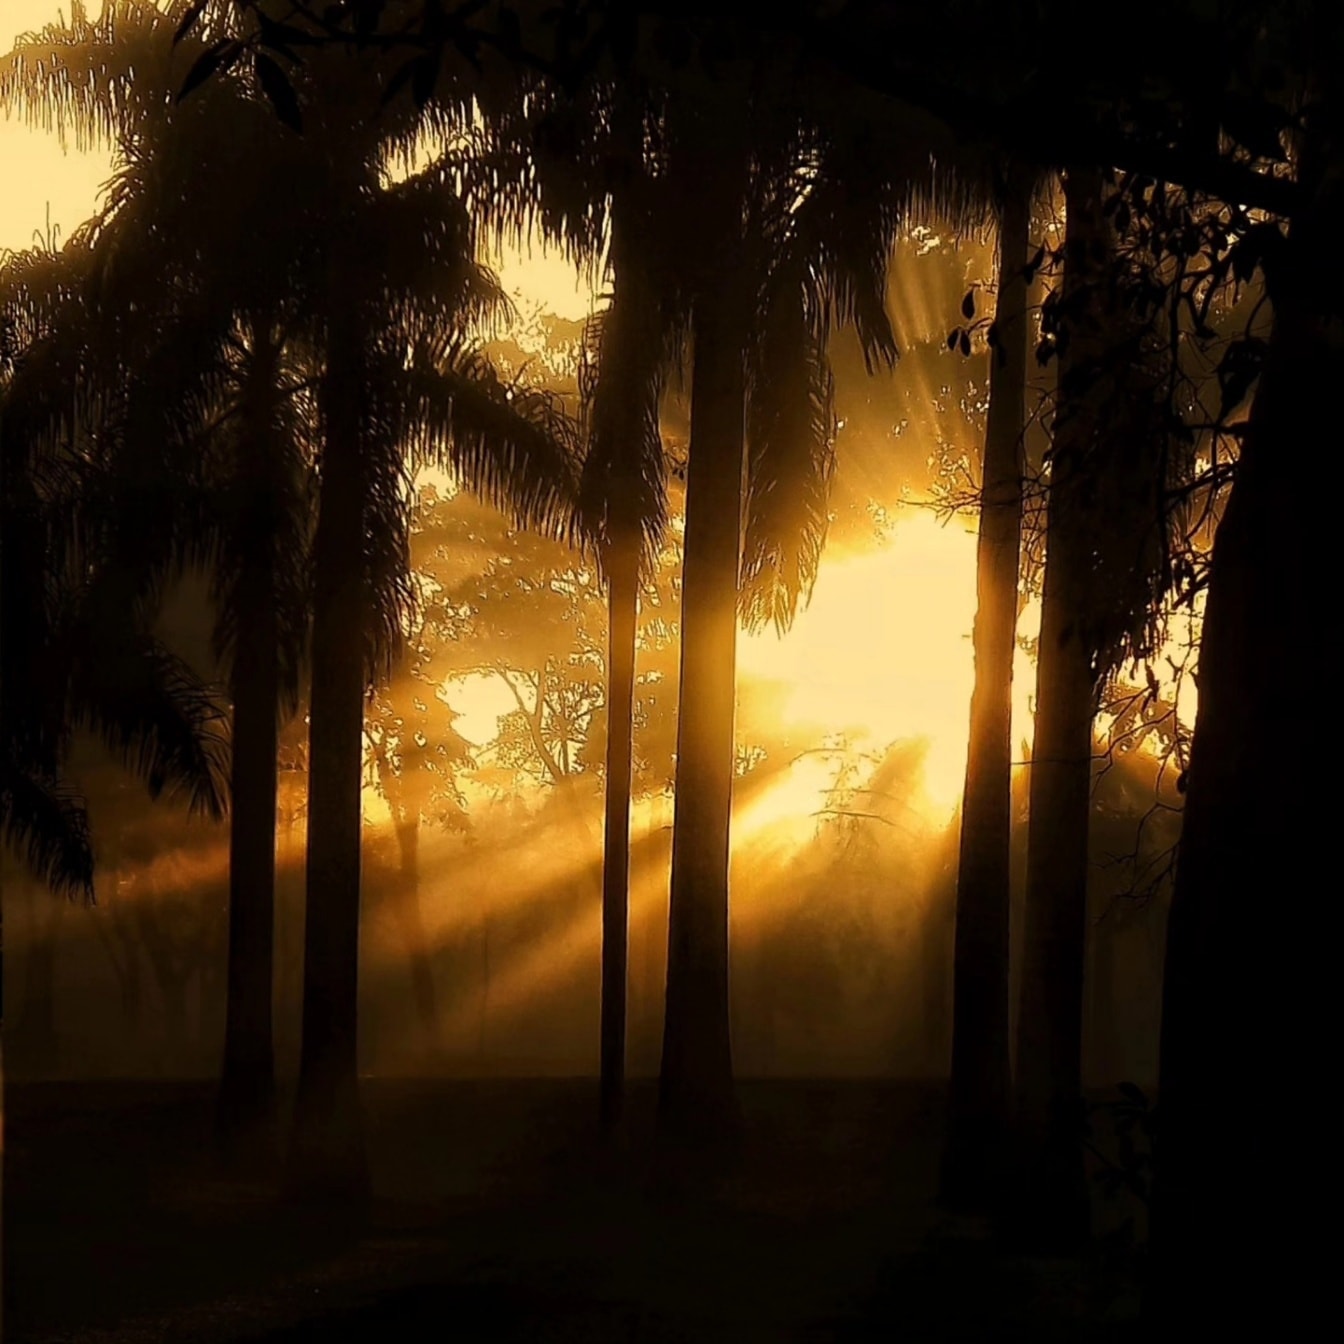 Grafico dei raggi luminosi del sole in una foresta oscura con una silhouette di alberi in ombra